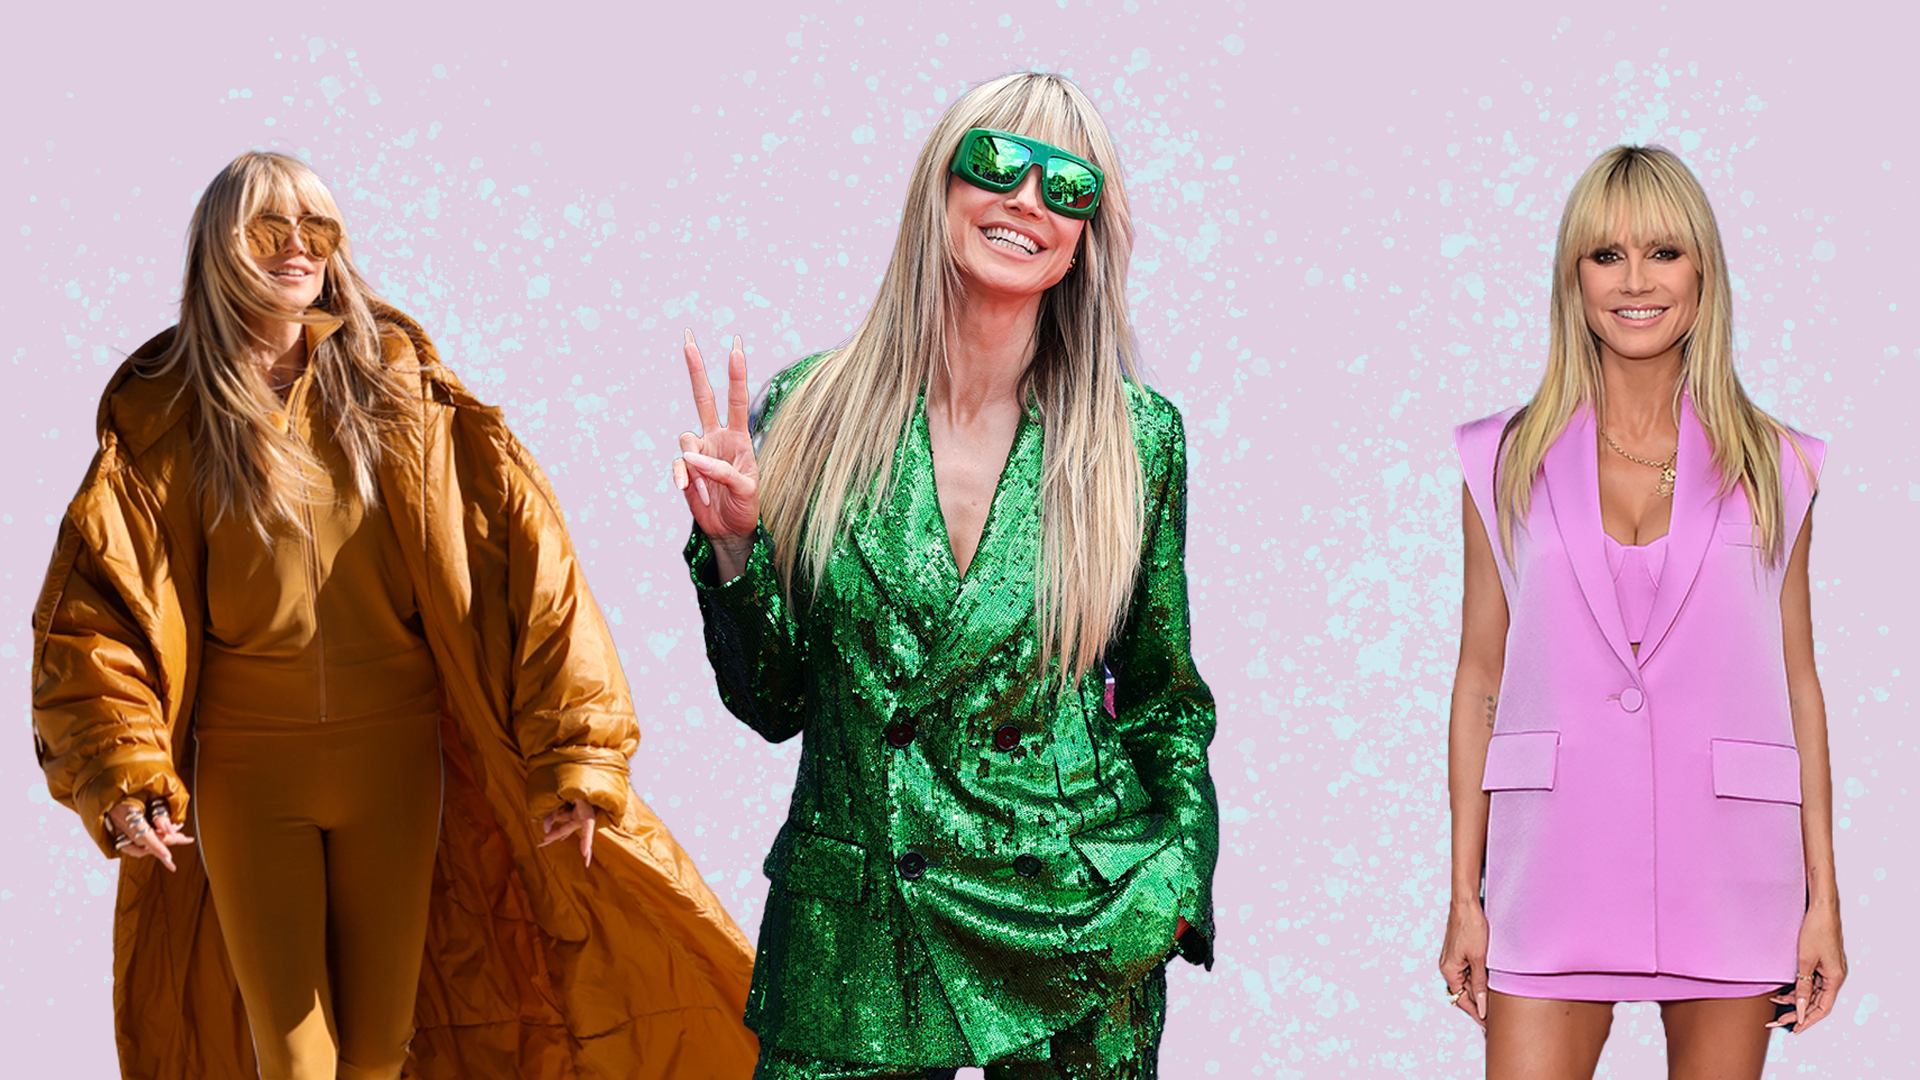 Von Pink bis Grün - Heidi schwört immer wieder auf Outfits in kräftigen Farben. Wir zeigen ihre Top 6 Monochrom-Looks.